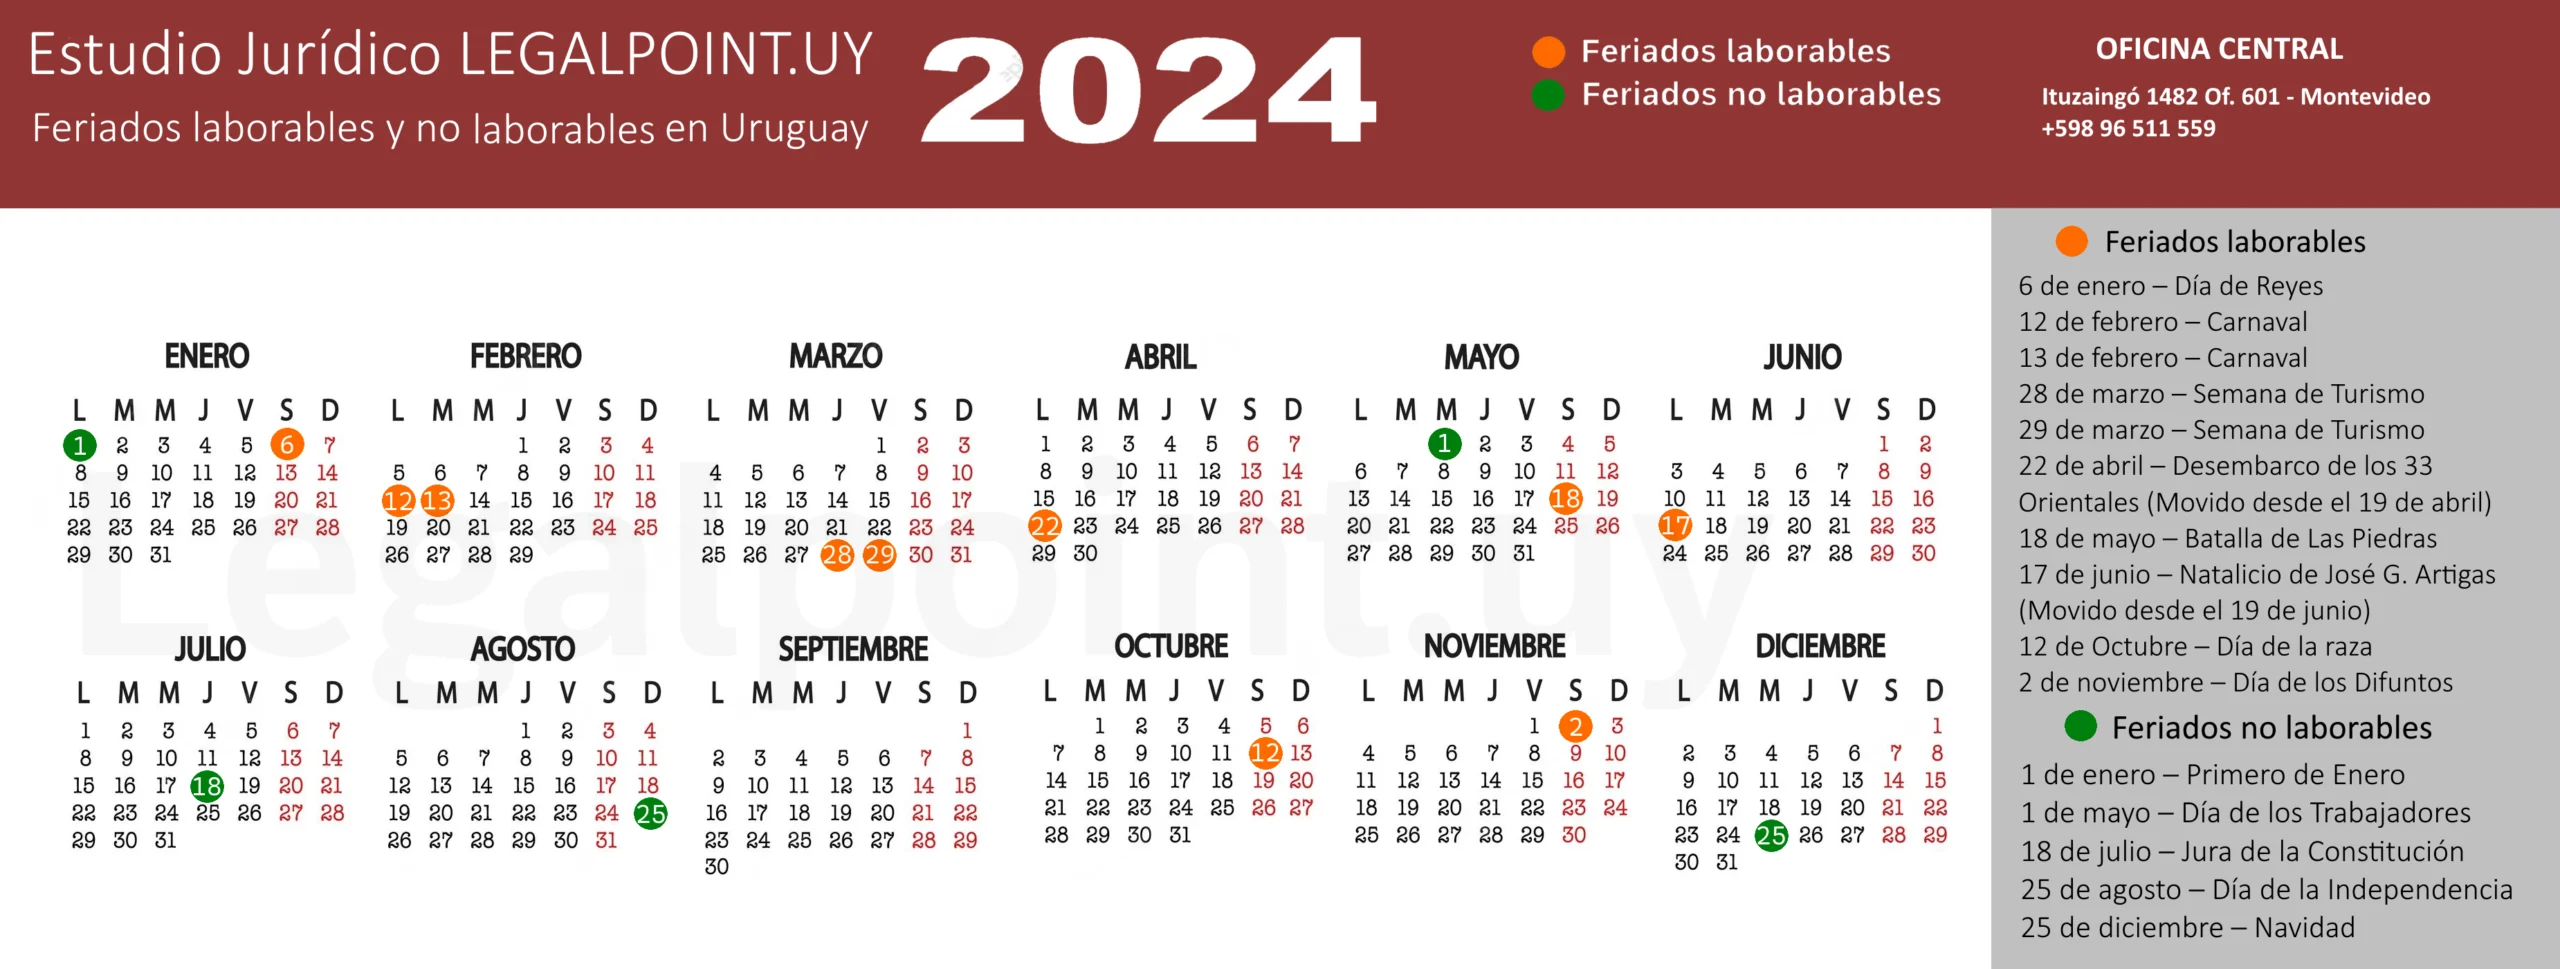 calendario-feriados-laborables-y-no-laborables-Uruguay-2024